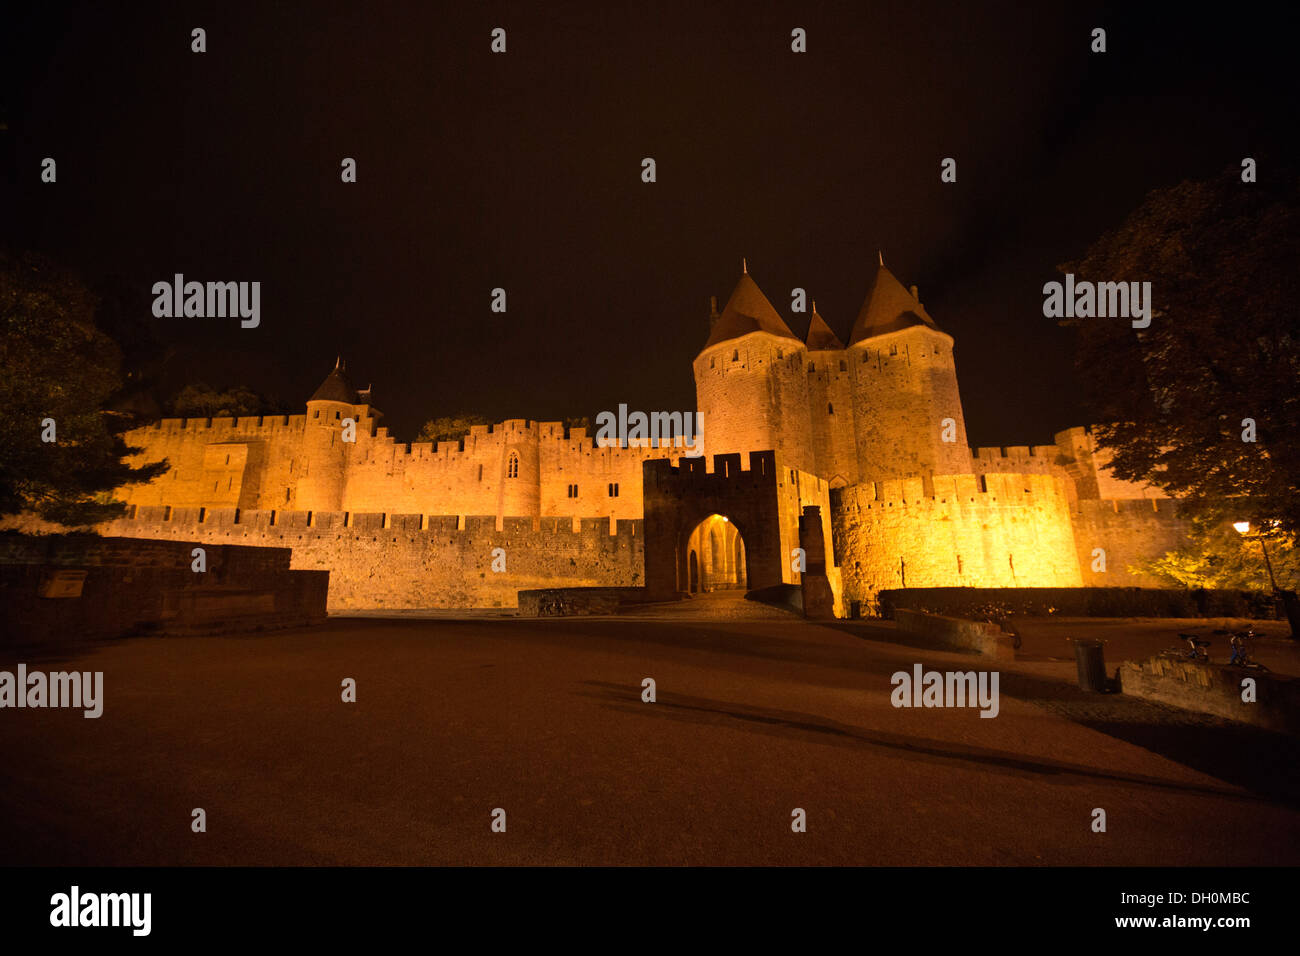 Ciudad medieval fortificada de Carcassonne, Les Remparts les remparts de noche 138876 Carcassonne Foto de stock